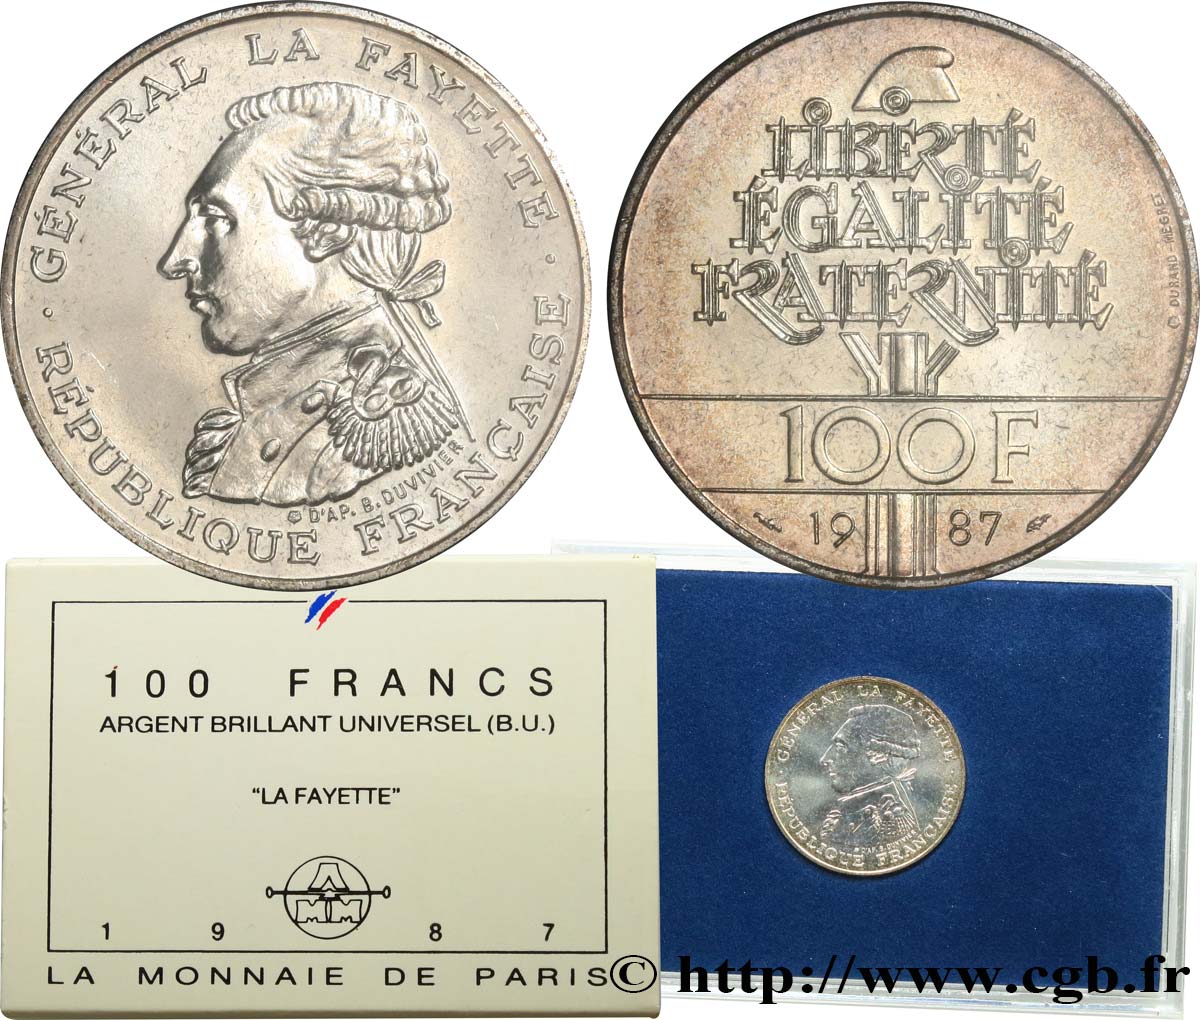 Brillant Universel 100 francs Égalité - La Fayette 1987 Paris F5.1603 6 MS 